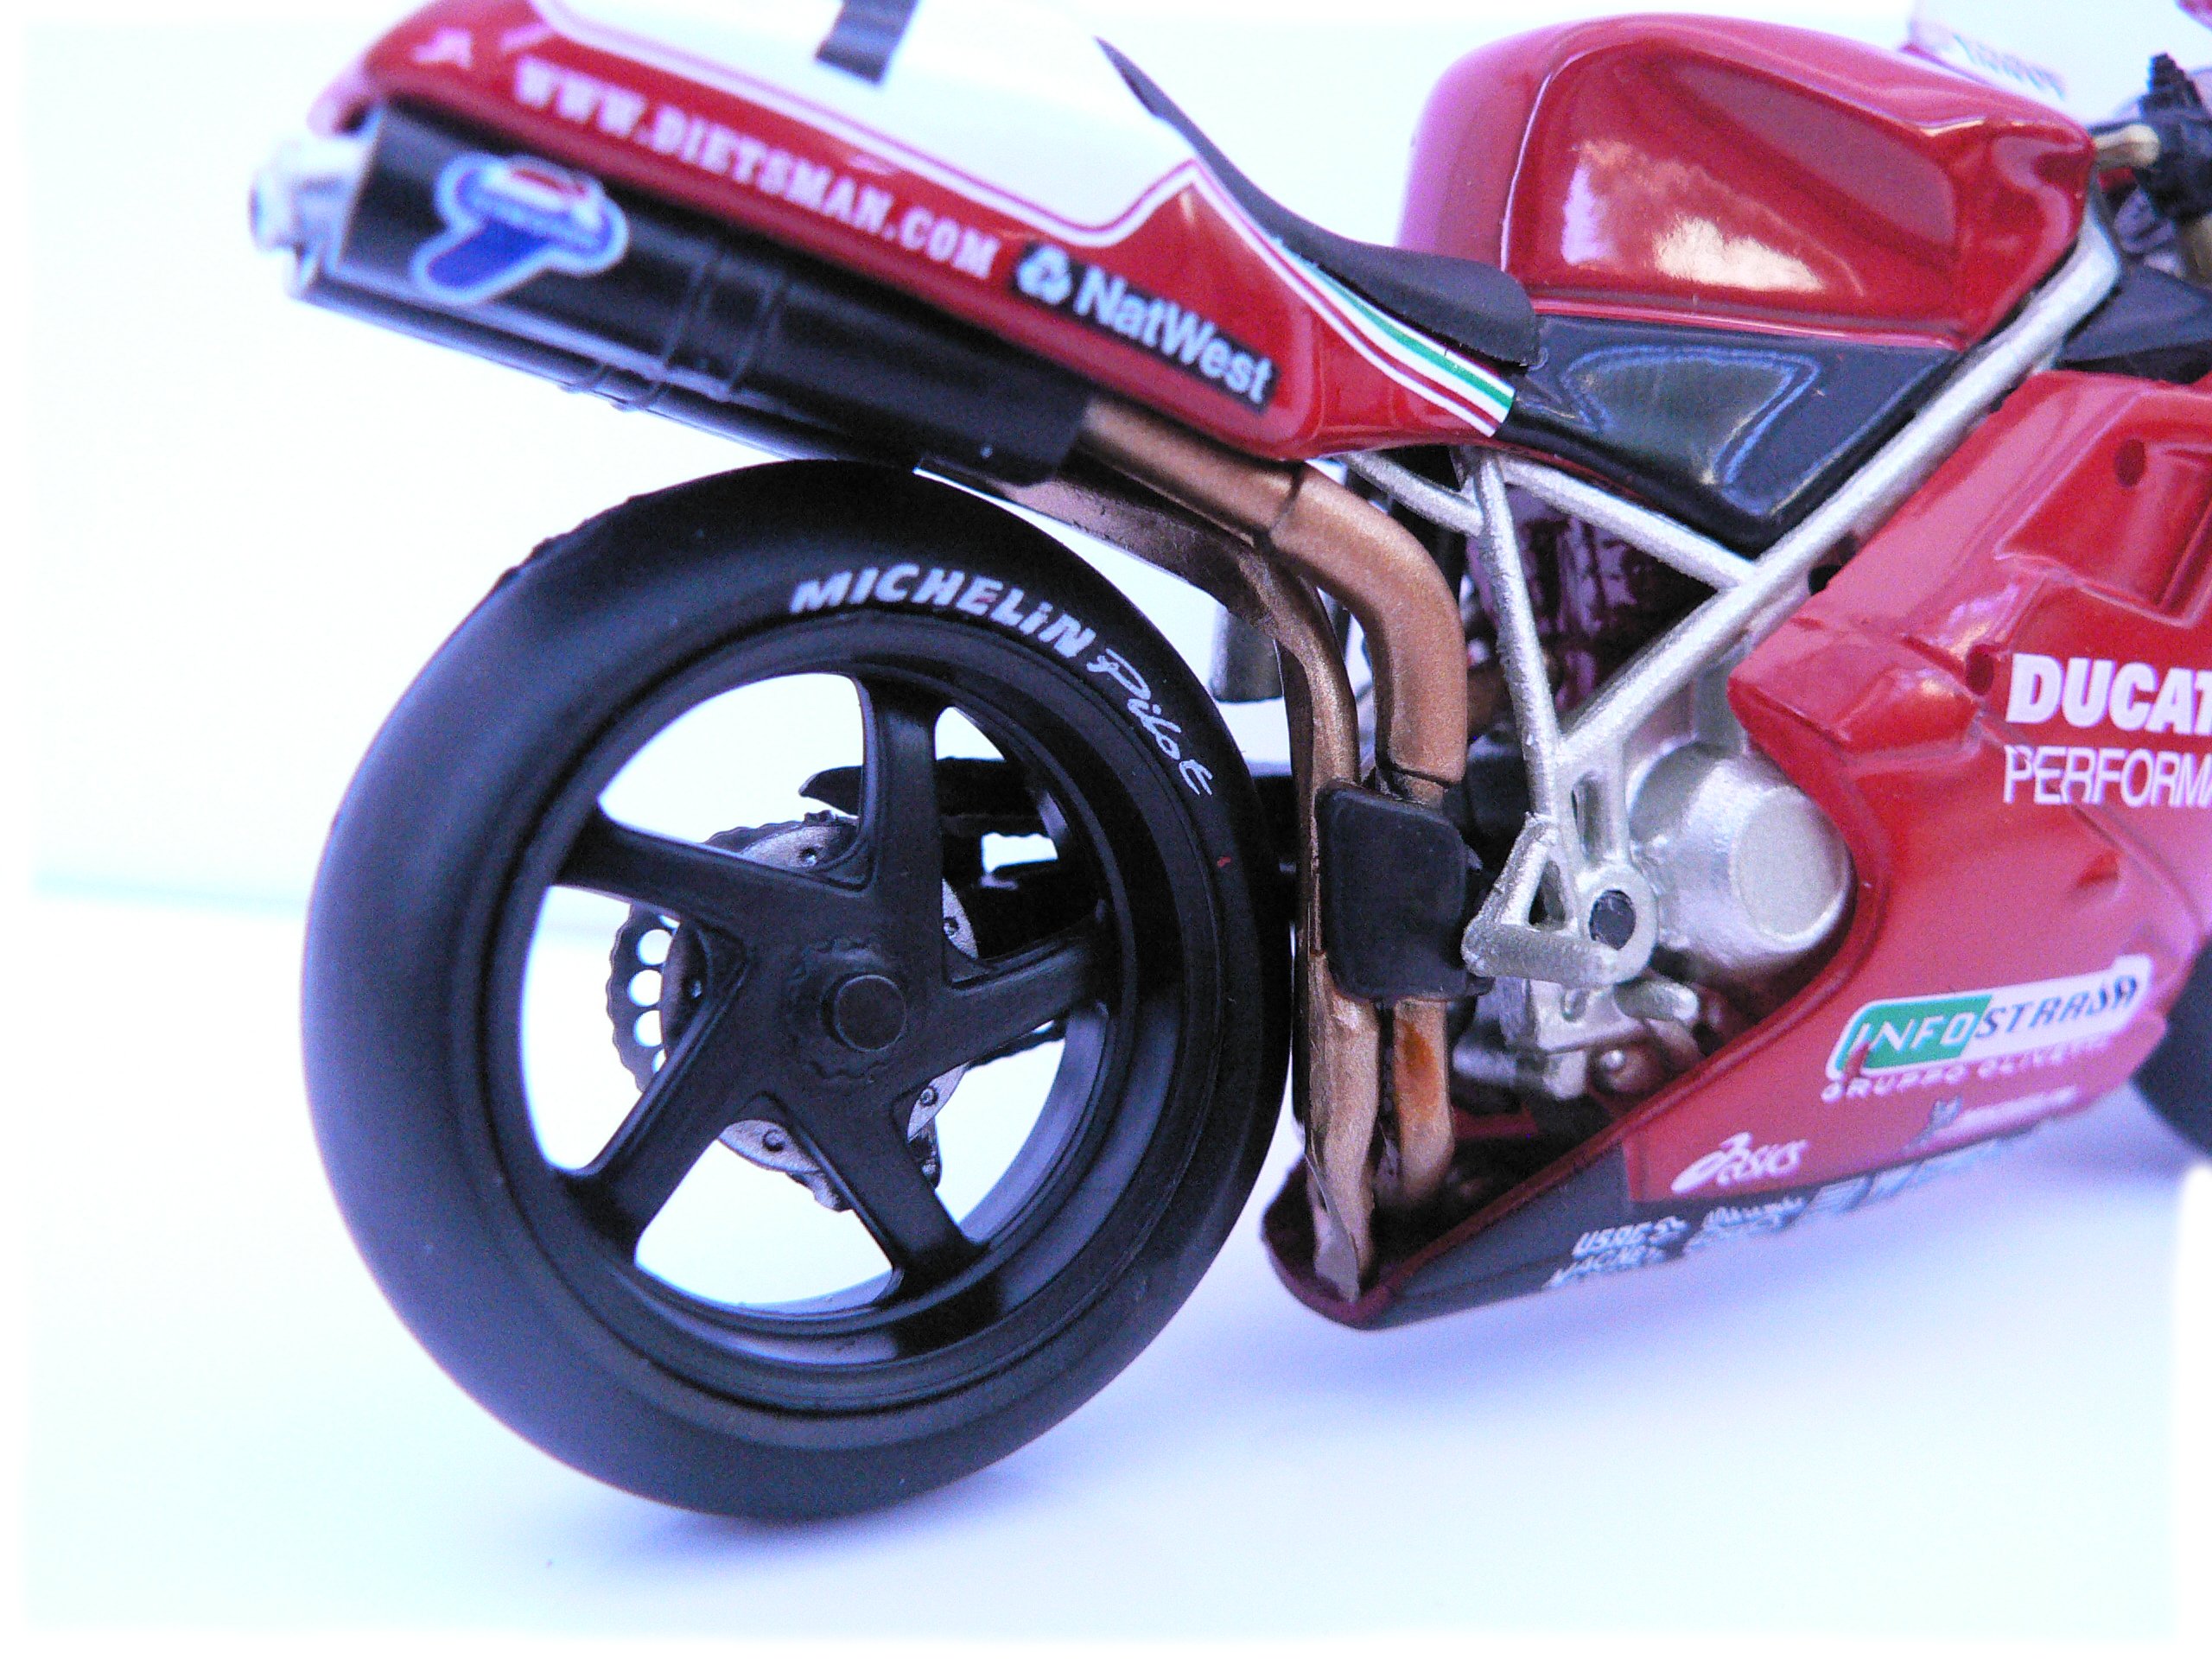 IXO Ducati 995 SB 1999 Carl Fogarty